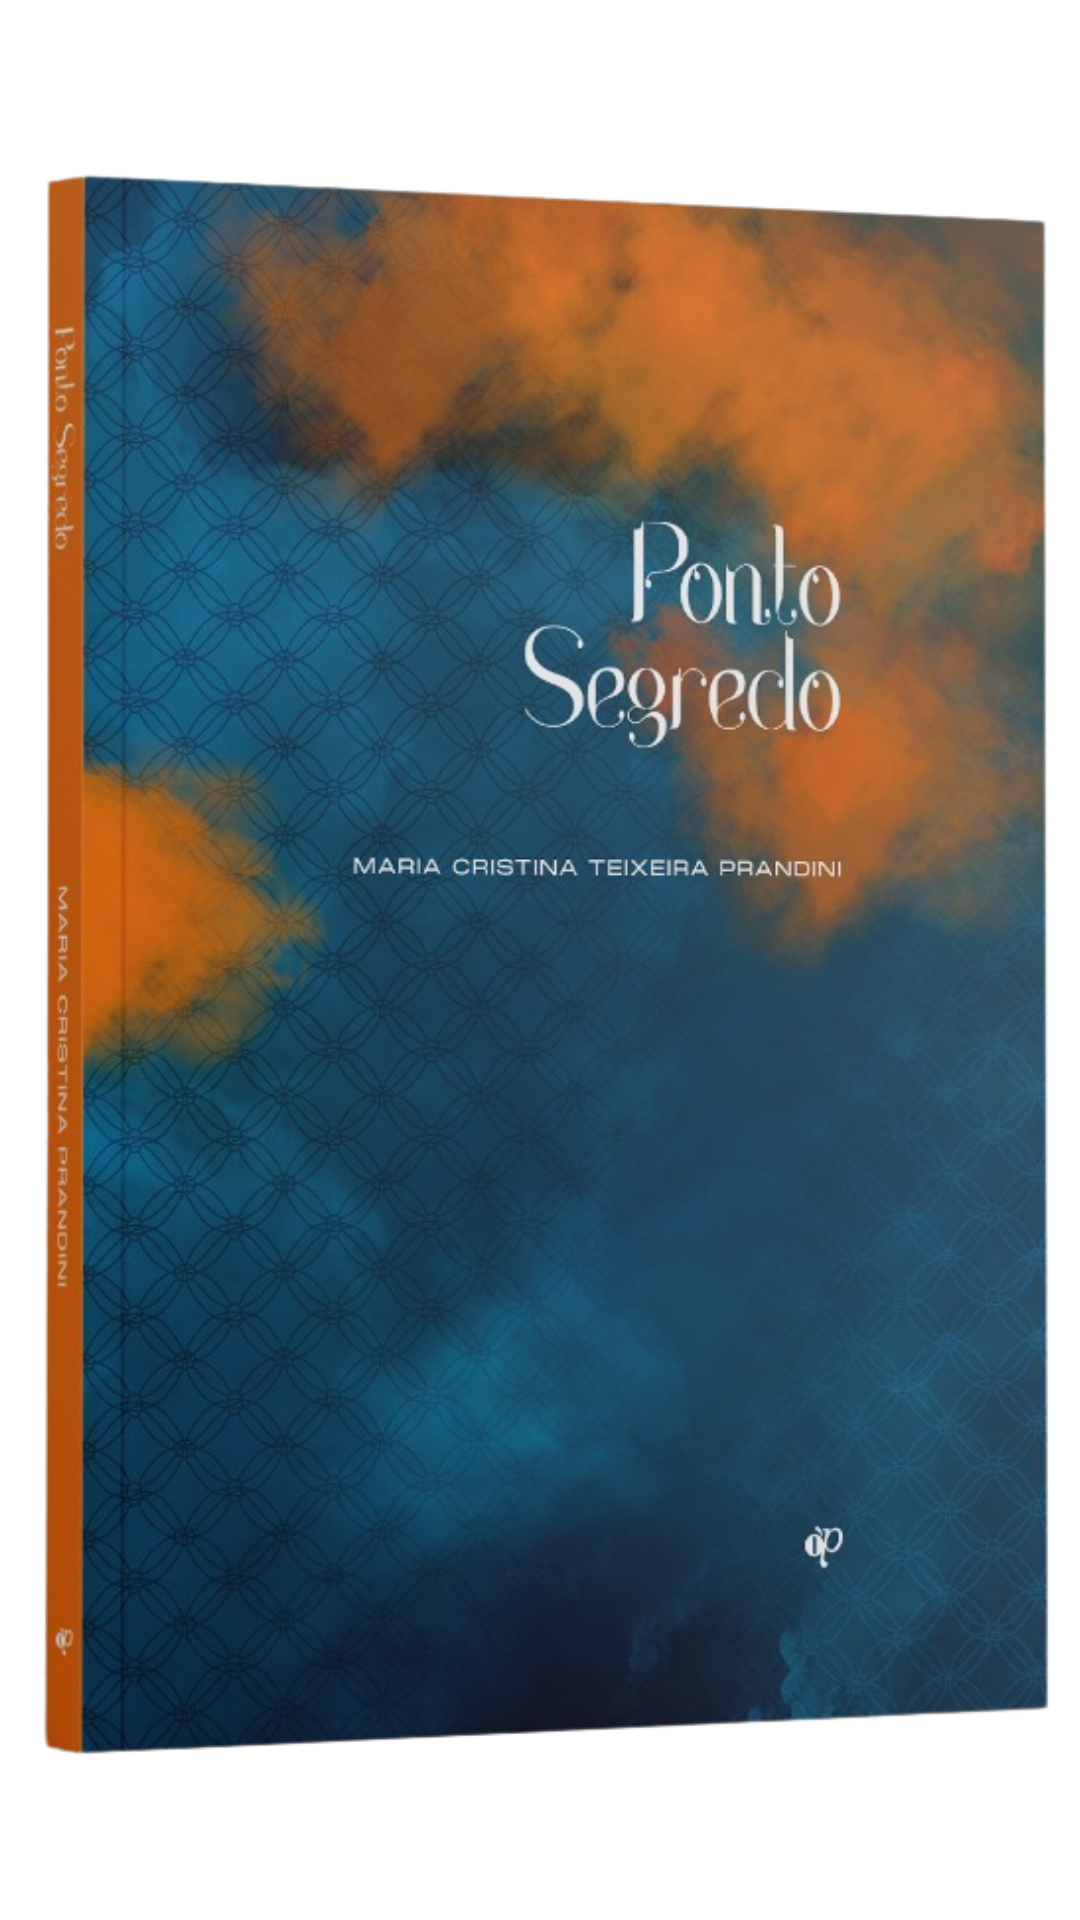 capa do livro de Maria Cristina Teixeira Prandini